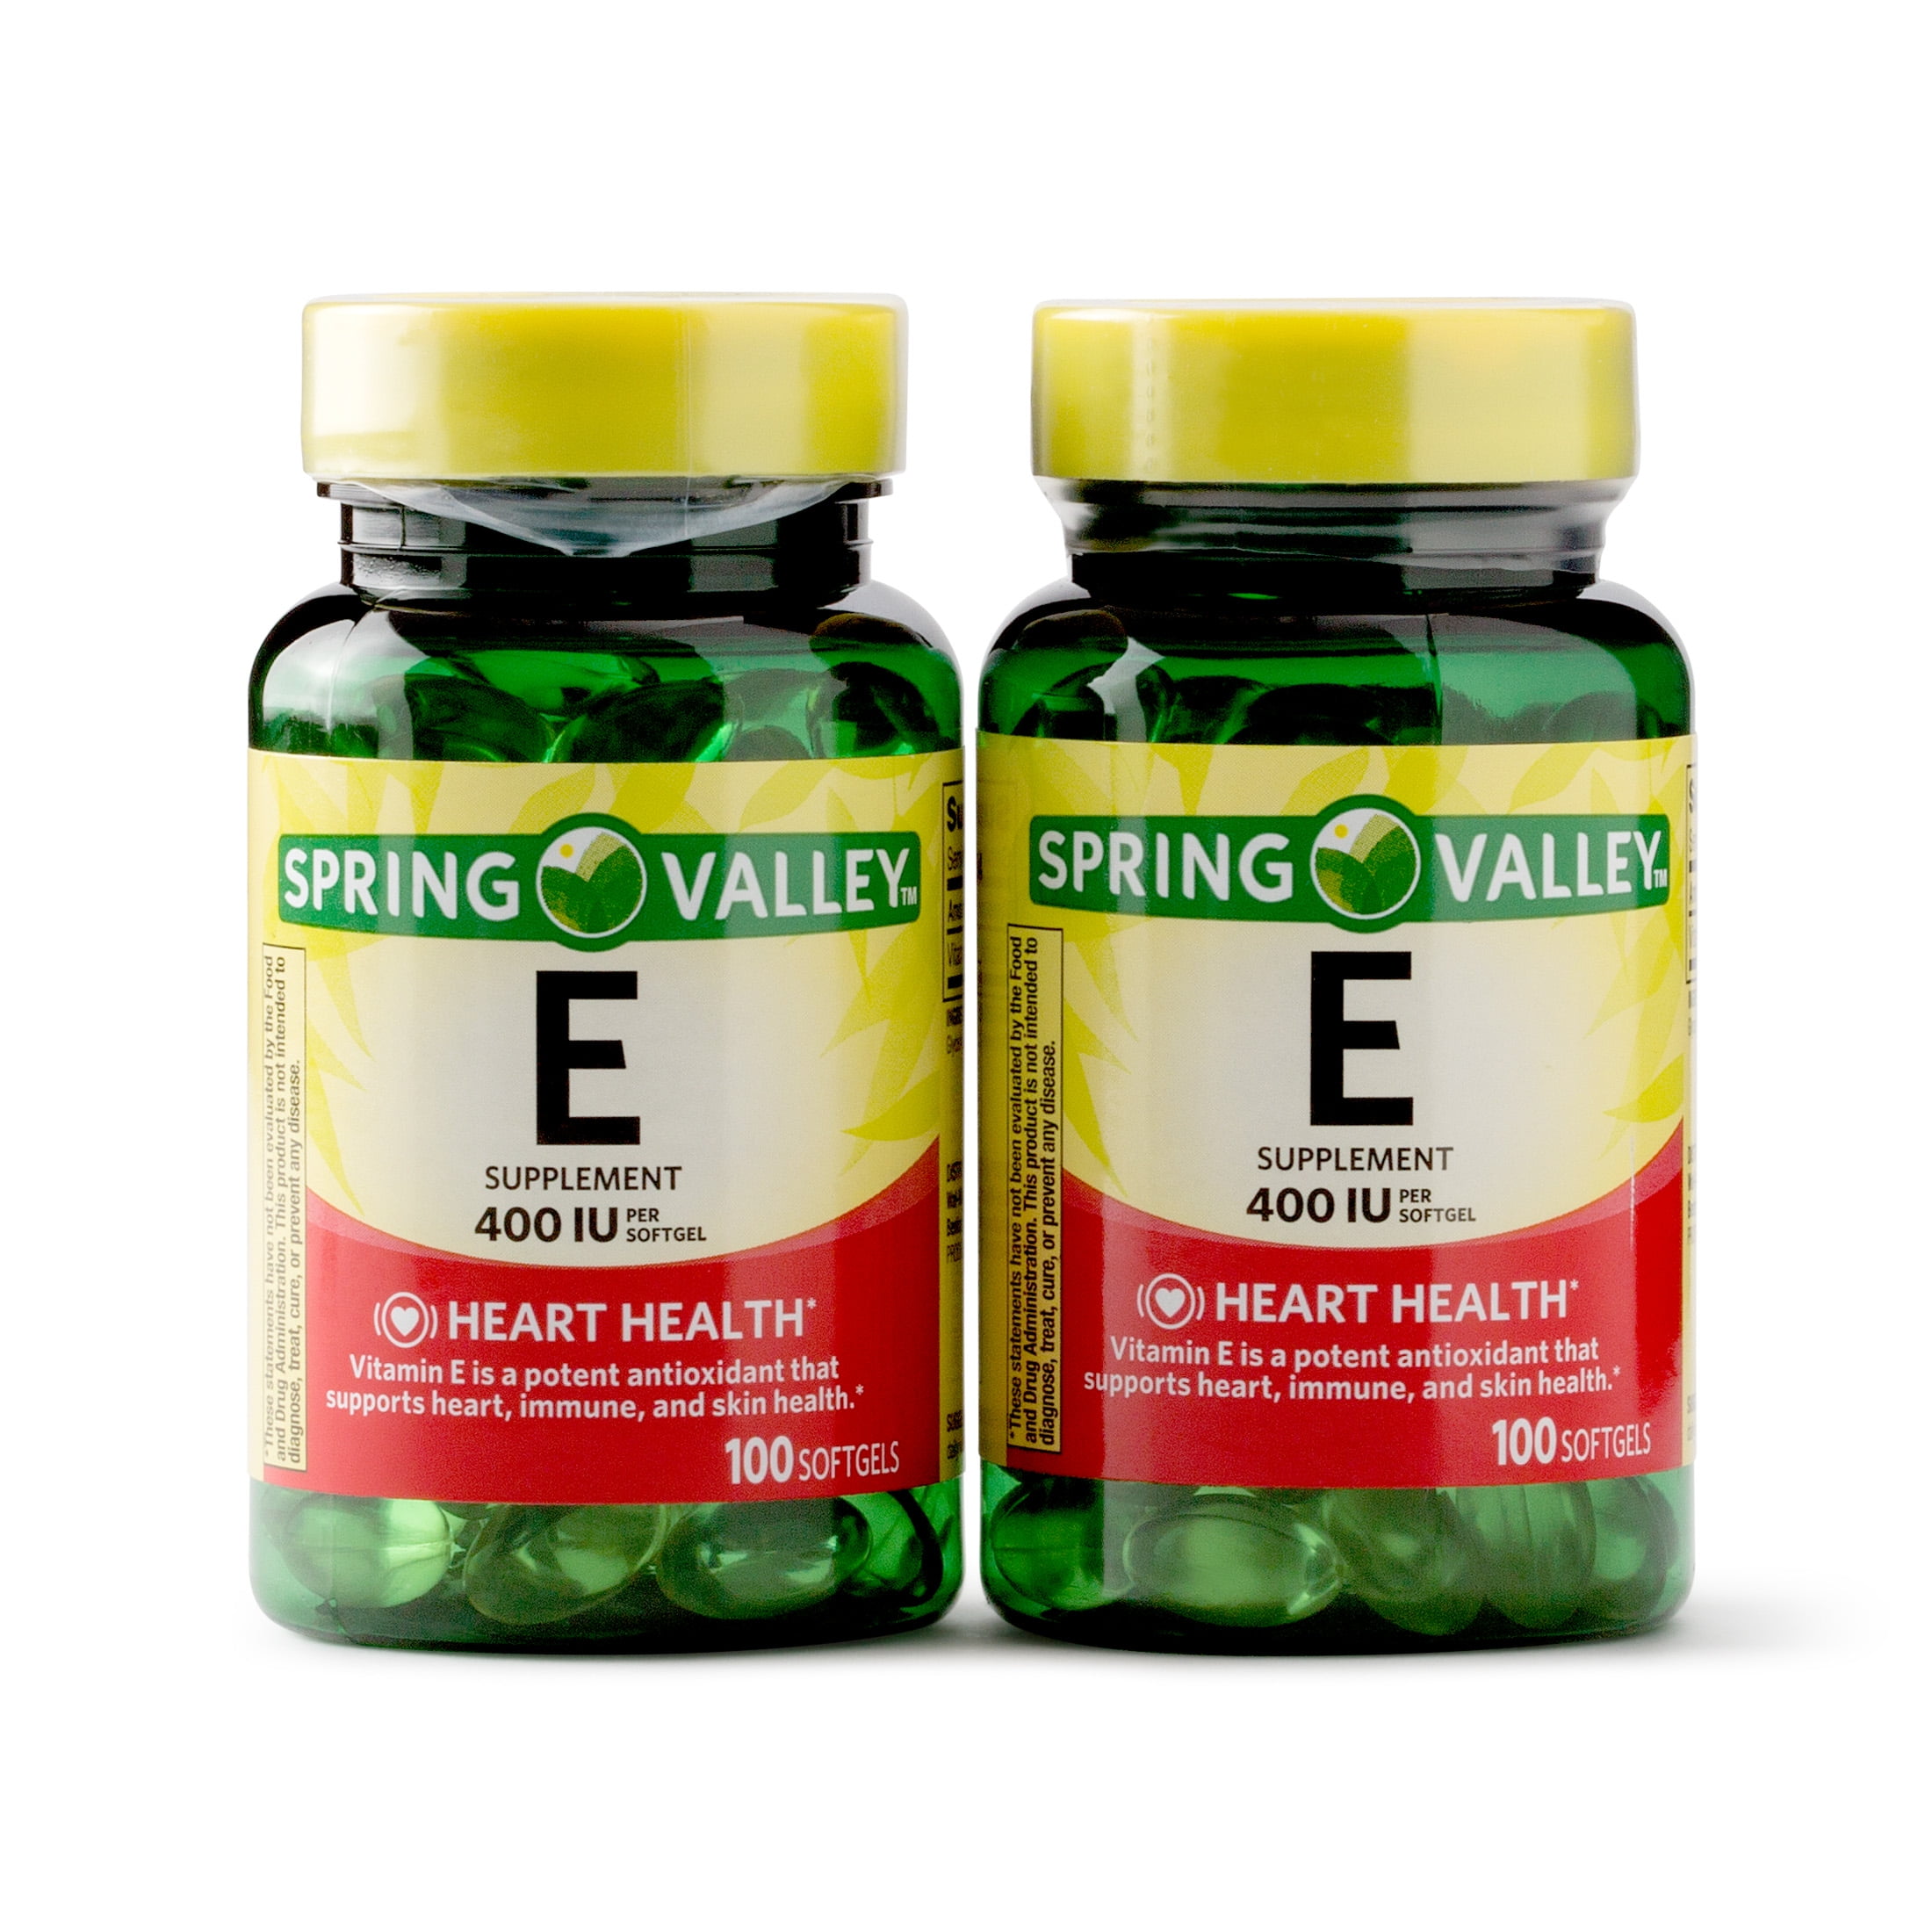 Spring Valley Vitamin E Vitamins Supplements 1 Softgel 200 Ct 2 Pack Walmart Com Walmart Com